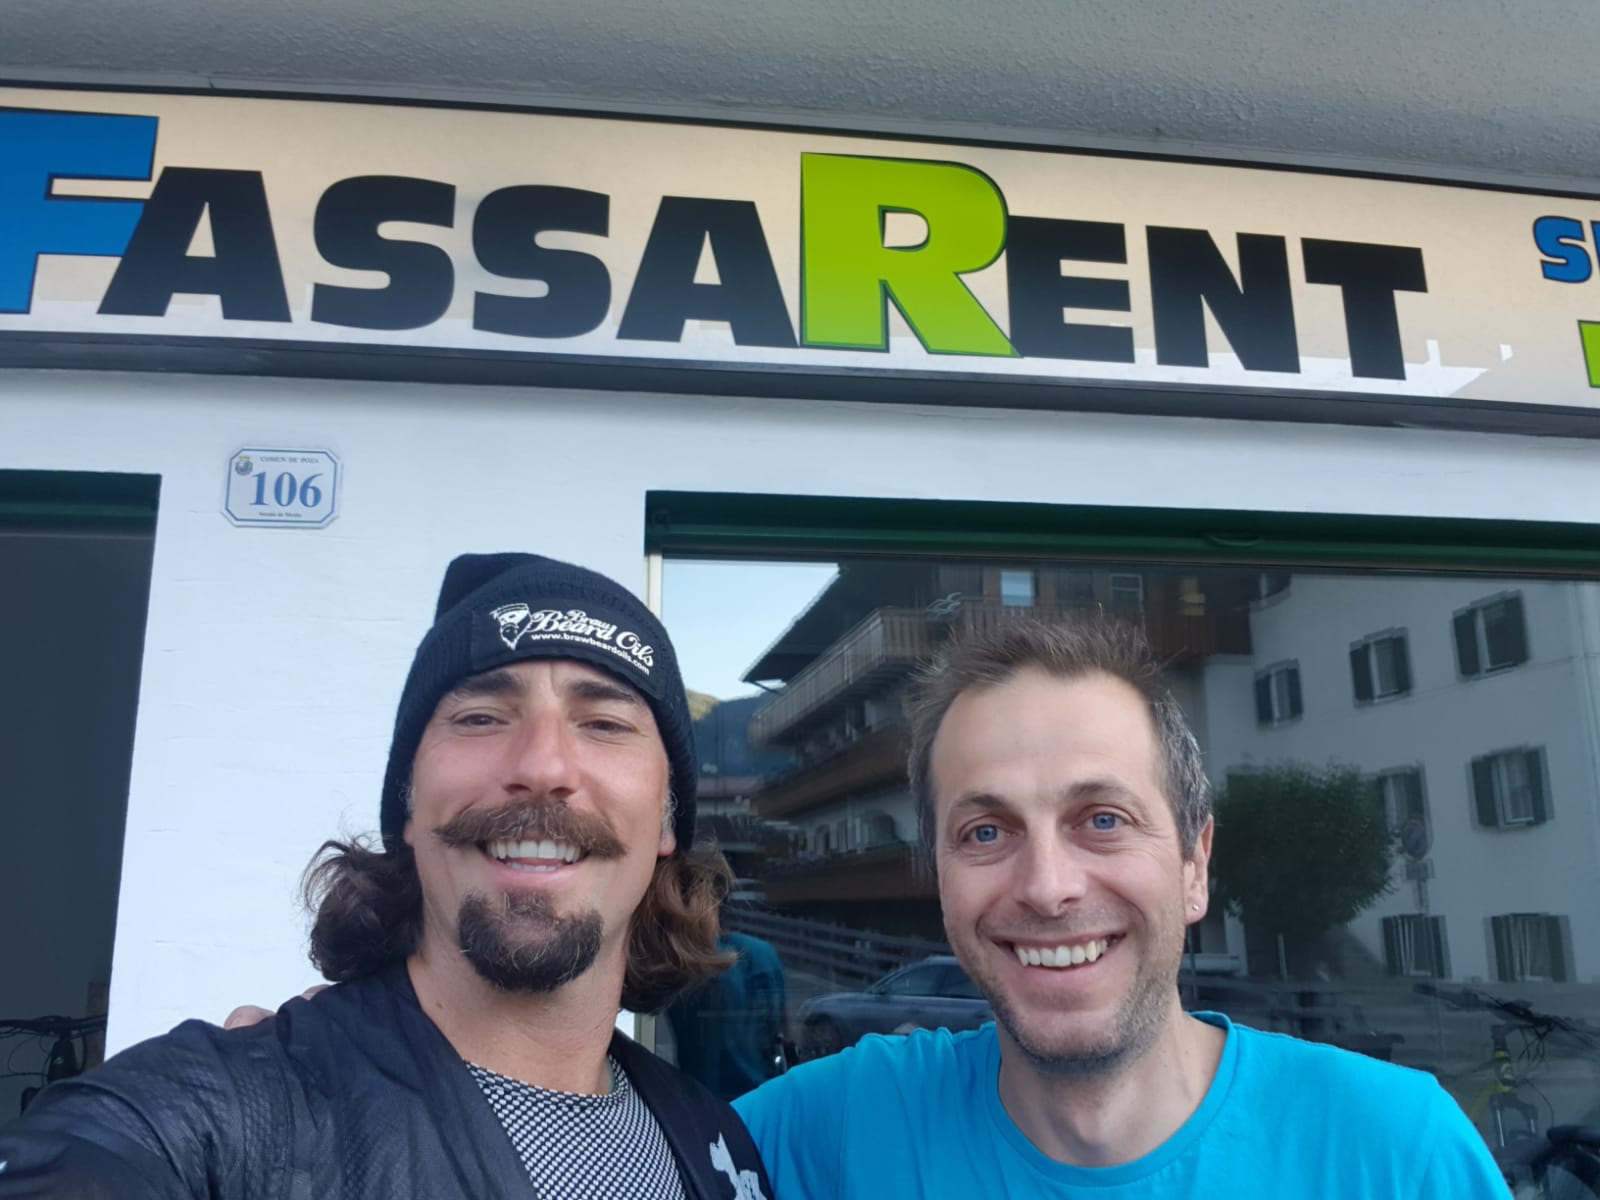 immagine di Gabriele con Vittorio Brumotti davanti al noleggio bici ed ebike Fassa Rent